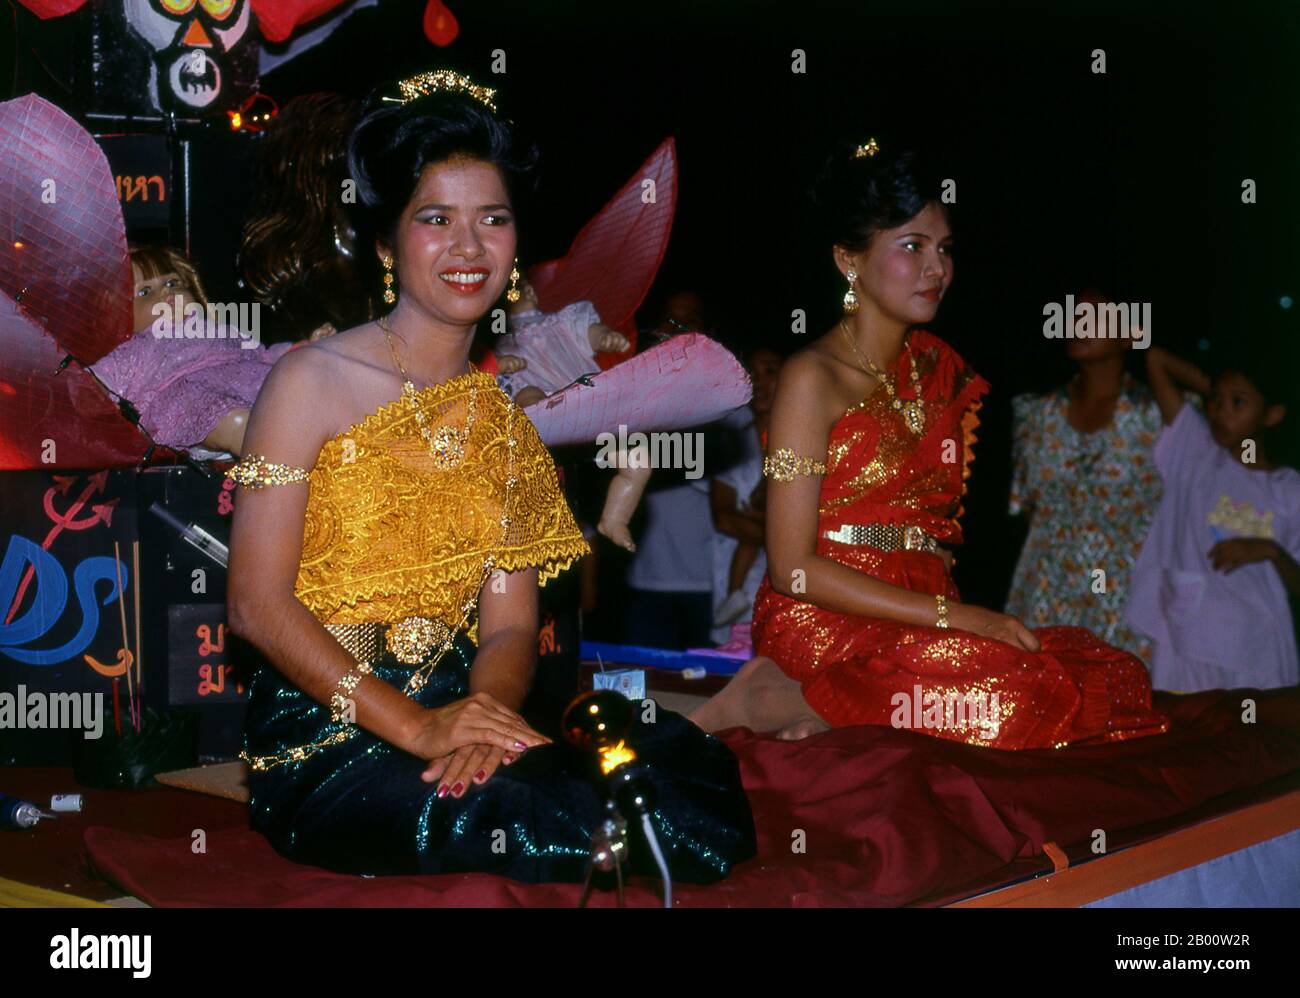 Thaïlande: Festival beautés, Festival Loy Krathong, Phuket. Festival beautés dans un défilé, Phuket, Thaïlande du Sud. Loy Krathong se tient chaque année le jour de la pleine nuit de lune du 12ème mois dans le calendrier lunaire thaïlandais traditionnel. Dans le nord de la Thaïlande cela coïncide avec le festival Lanna connu sous le nom de Yi Peng. Banque D'Images